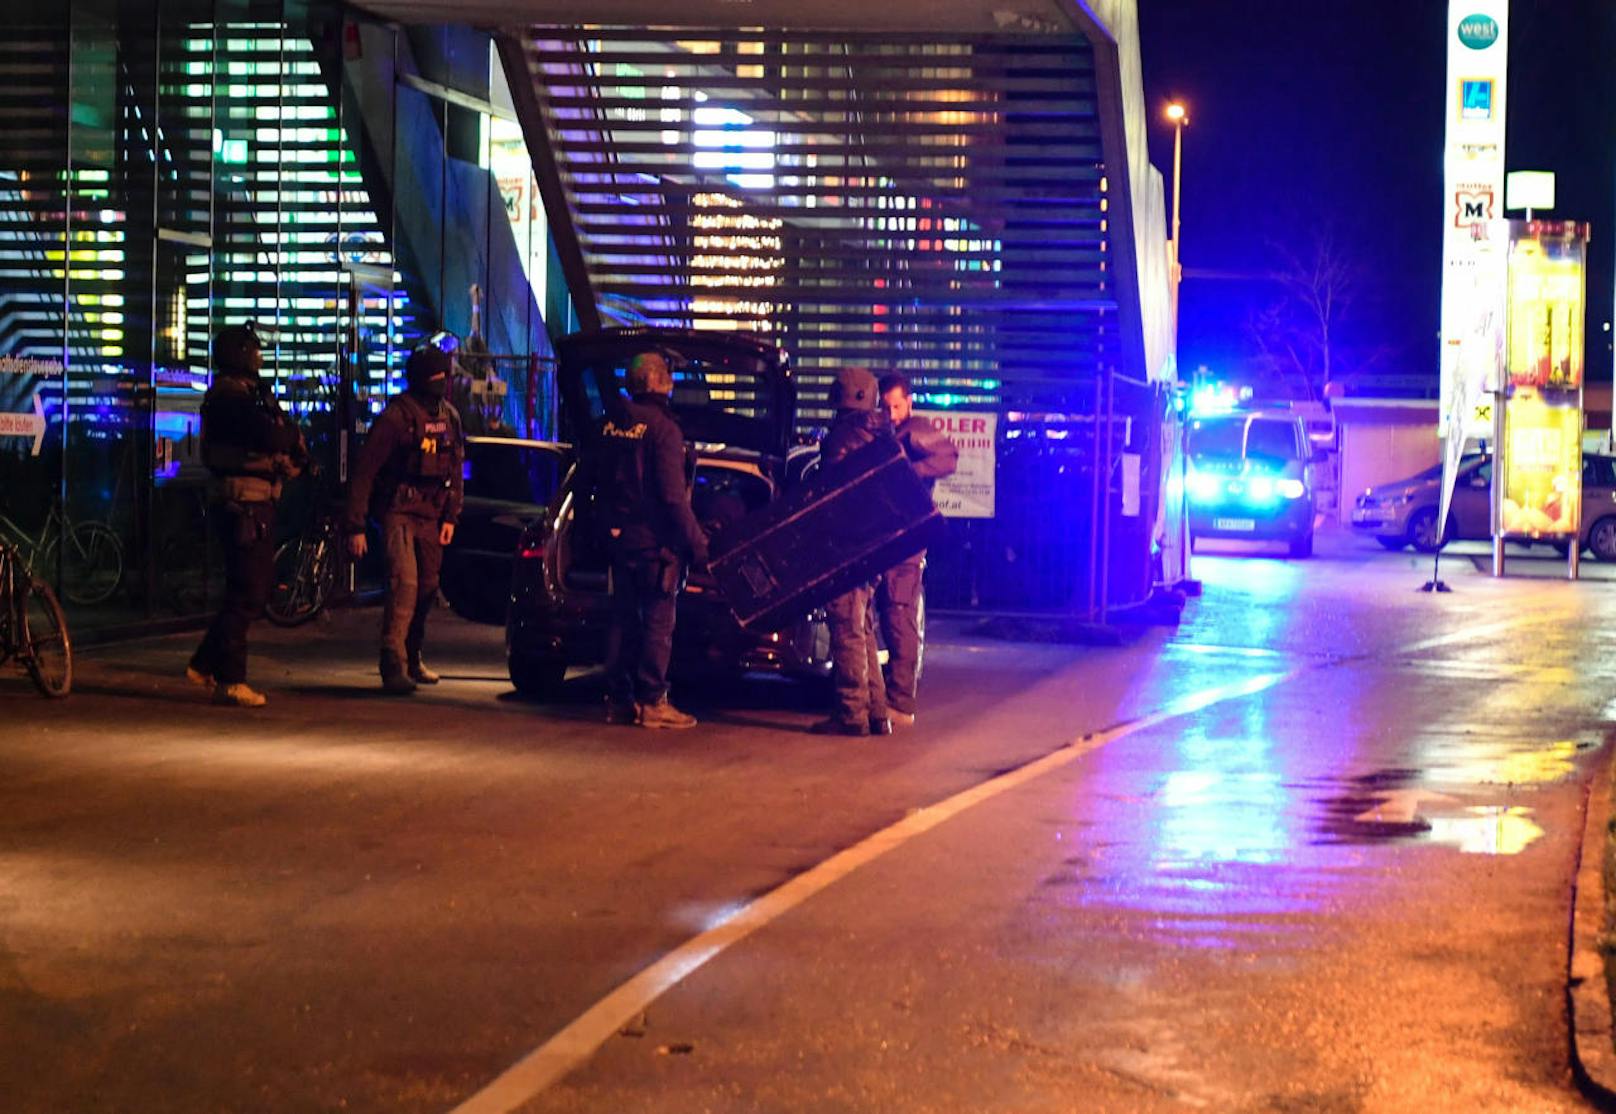 Bei einem Überfall auf das Q-West in Innsbruck sollen Schüsse gefallen sein. Eine Spezialeinheit der Polizei war im Einsatz.